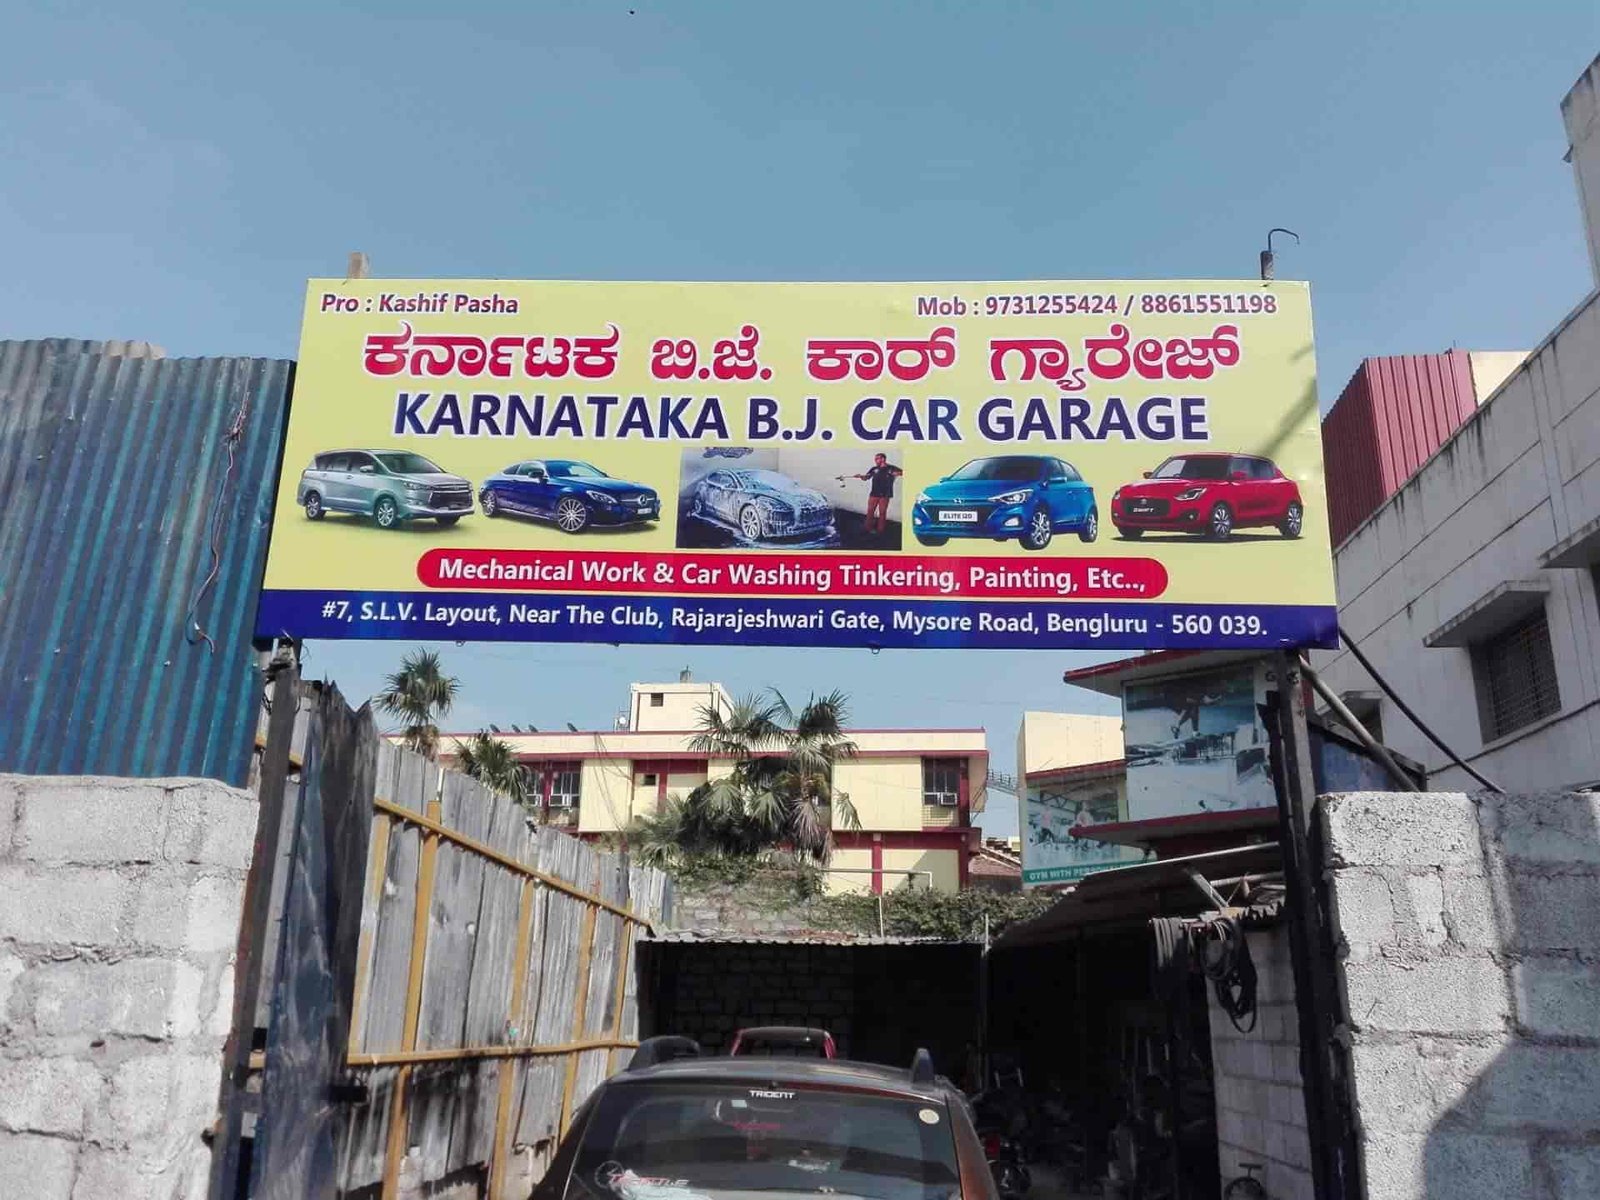 Karnataka RJ aCar Garage